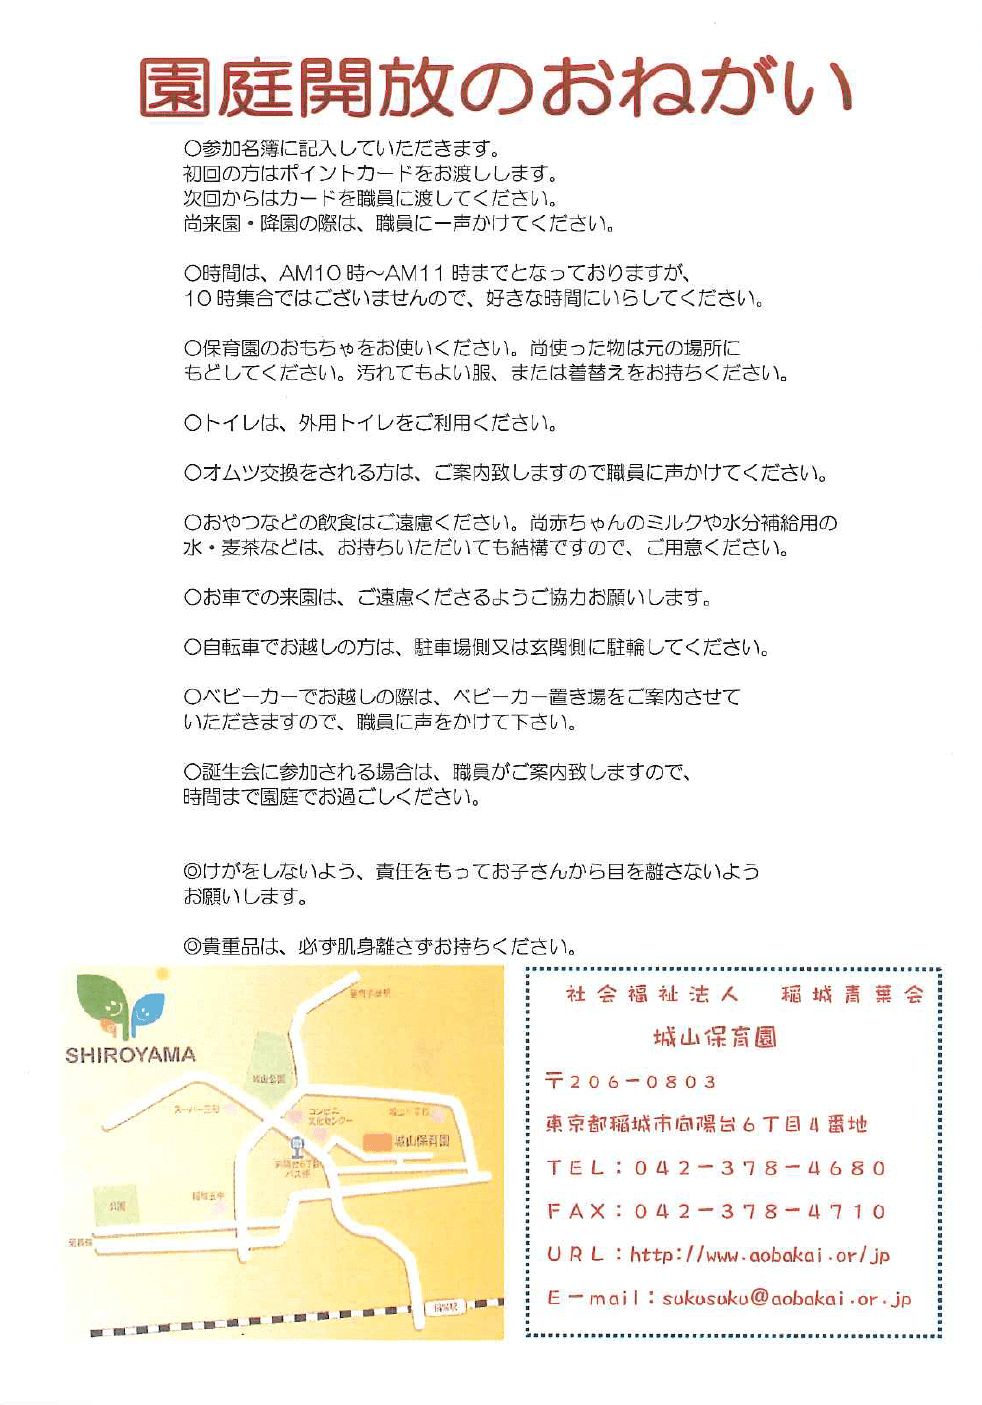 //www.aobakai.or.jp/files/libs/1990/201712211854474258.png